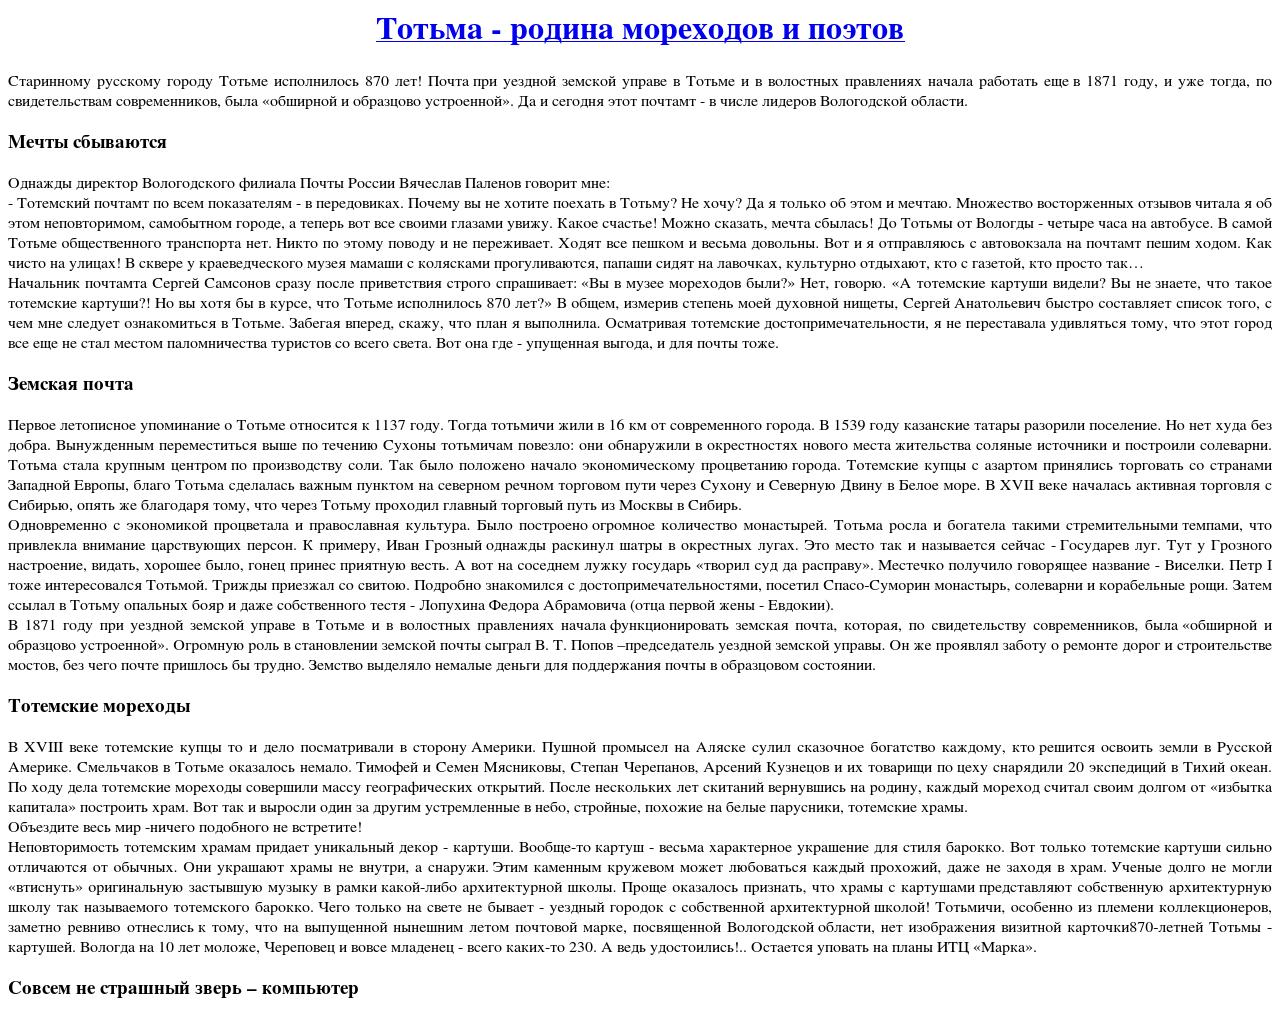 Изображение сайта totmagid.ru в разрешении 1280x1024